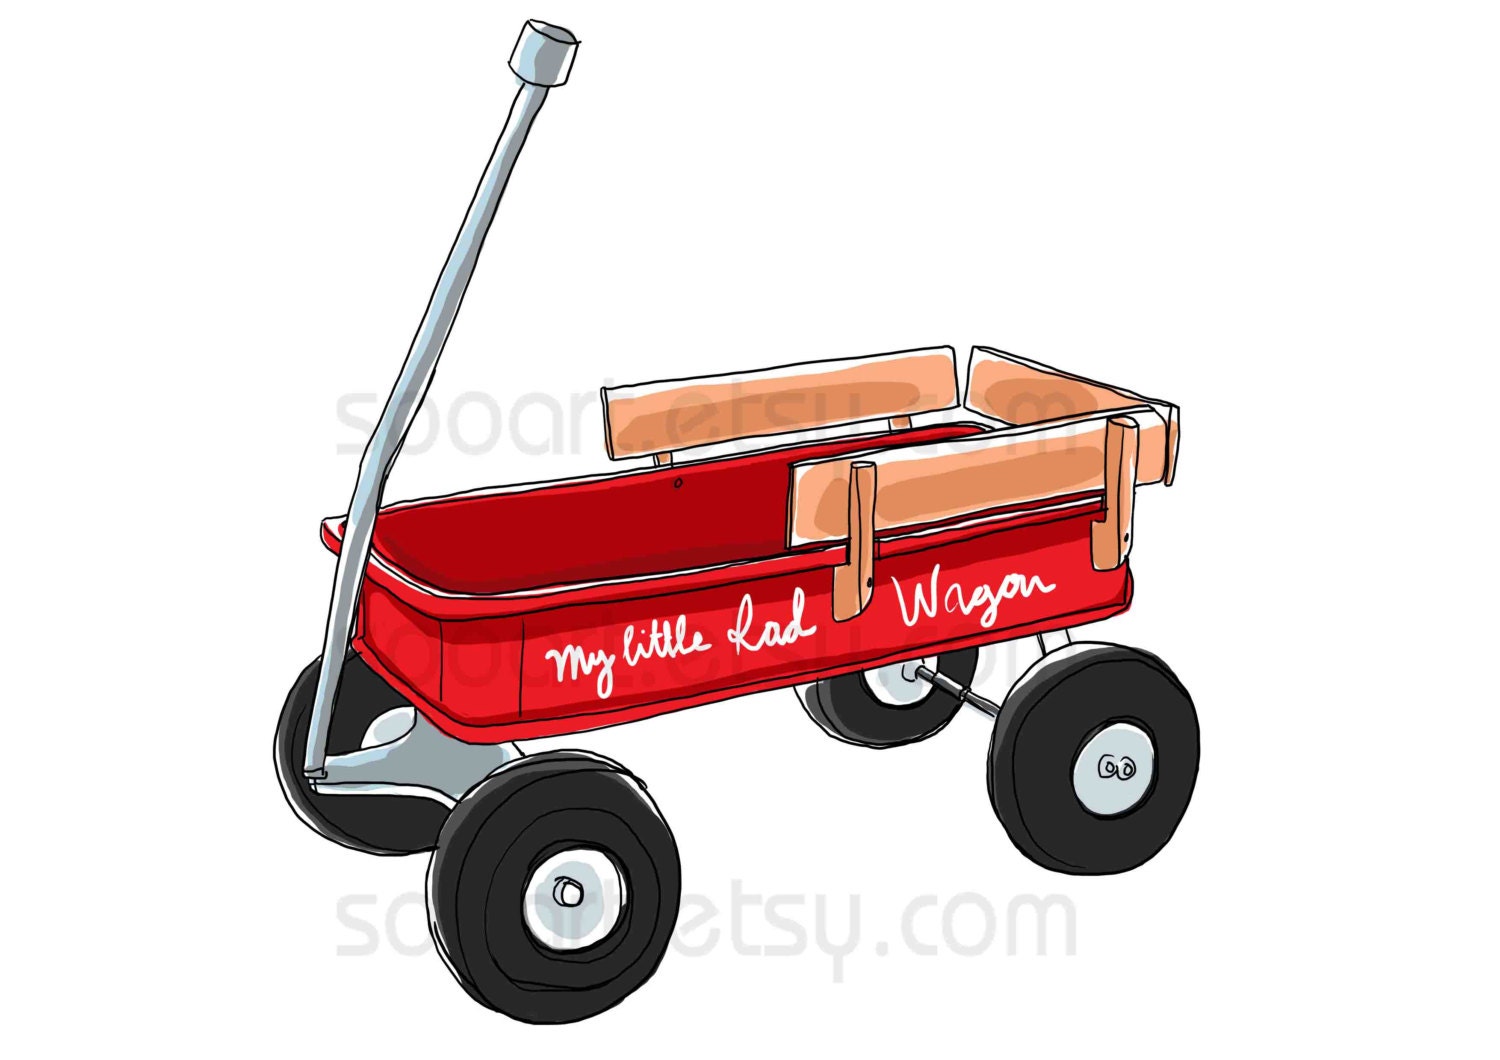 Vintage Toy Wagon 37